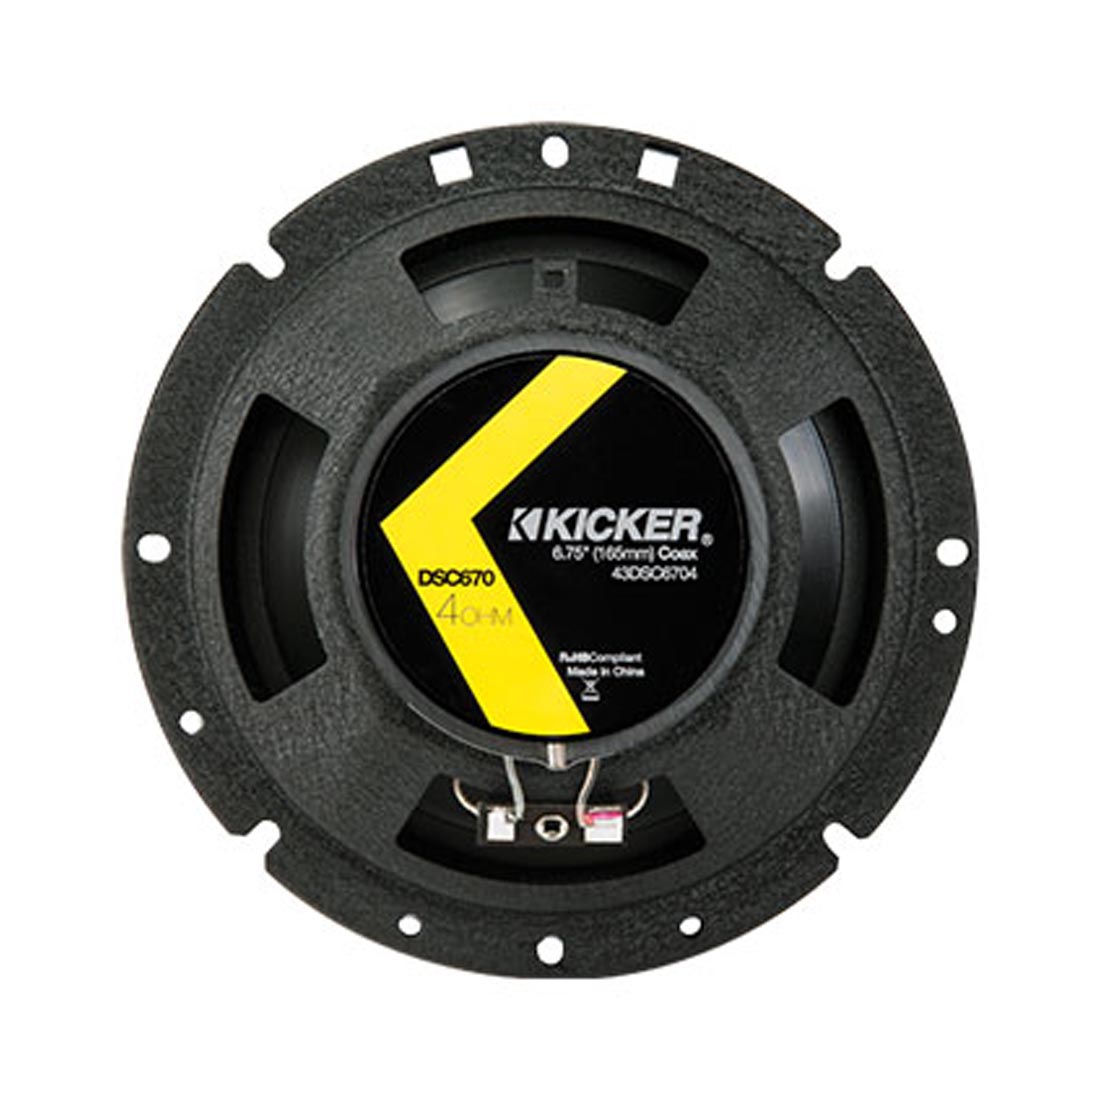 Kicker 43DSC6704 DS Series 6.75" 2-Way Coaxial Car Speakers